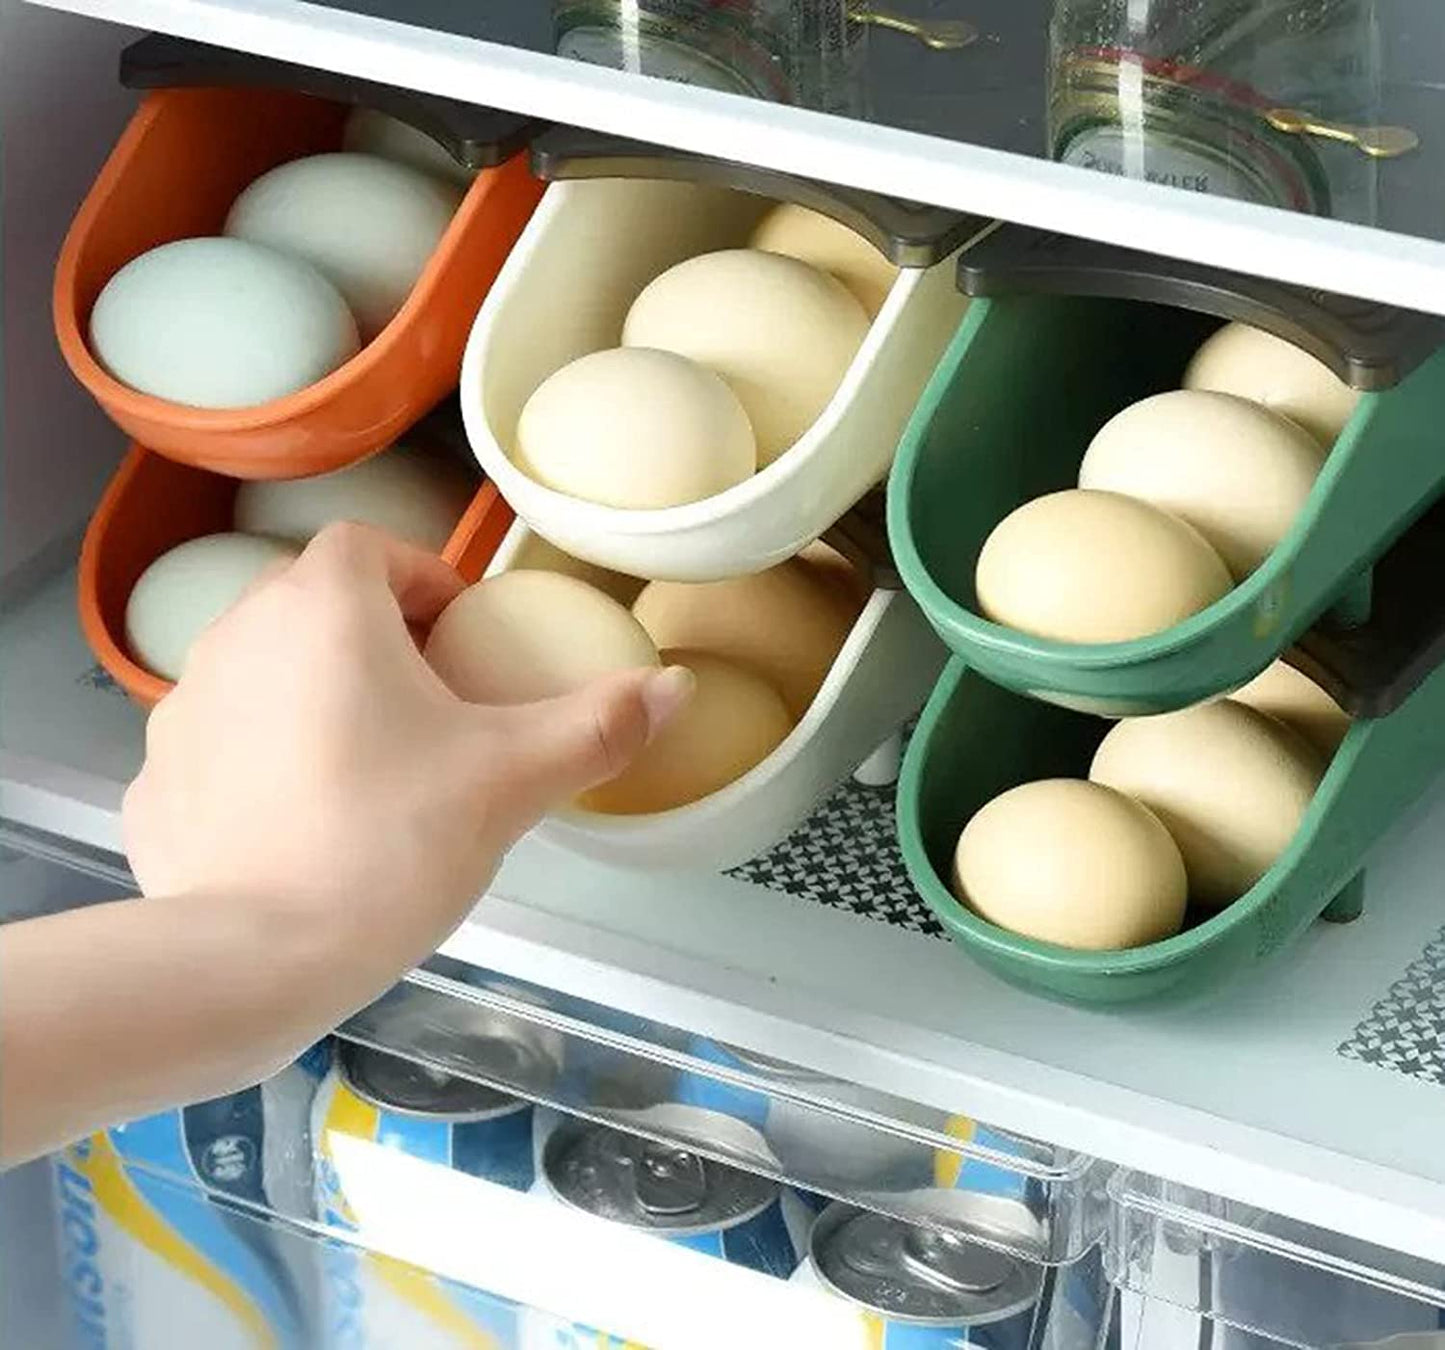 Egg Trays for Home Refrigerator Organizer